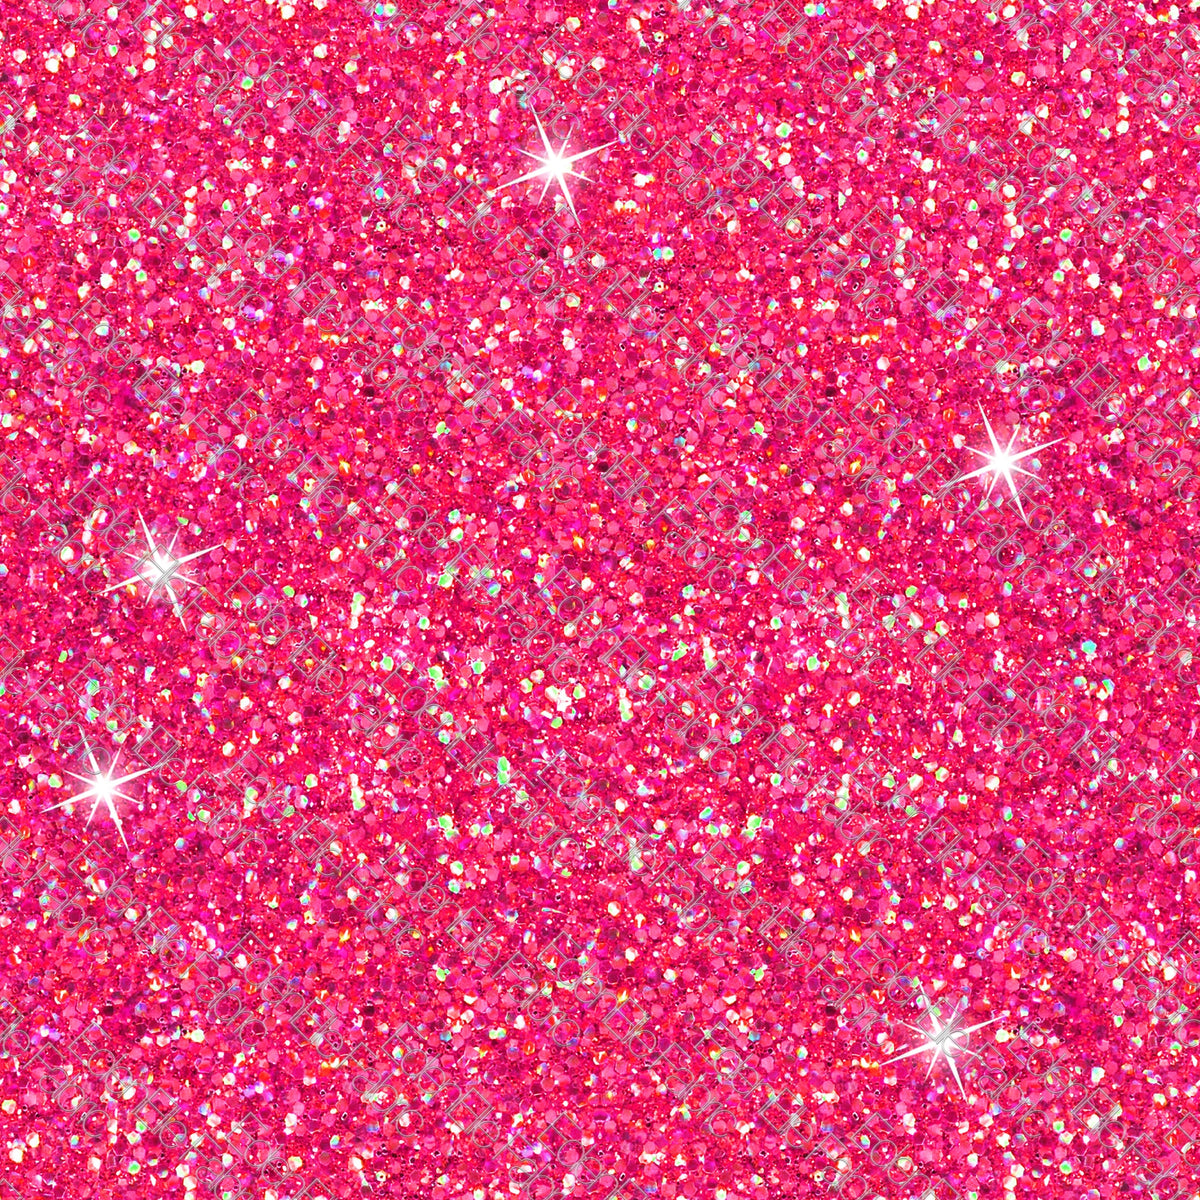 Neon Pink Glitter